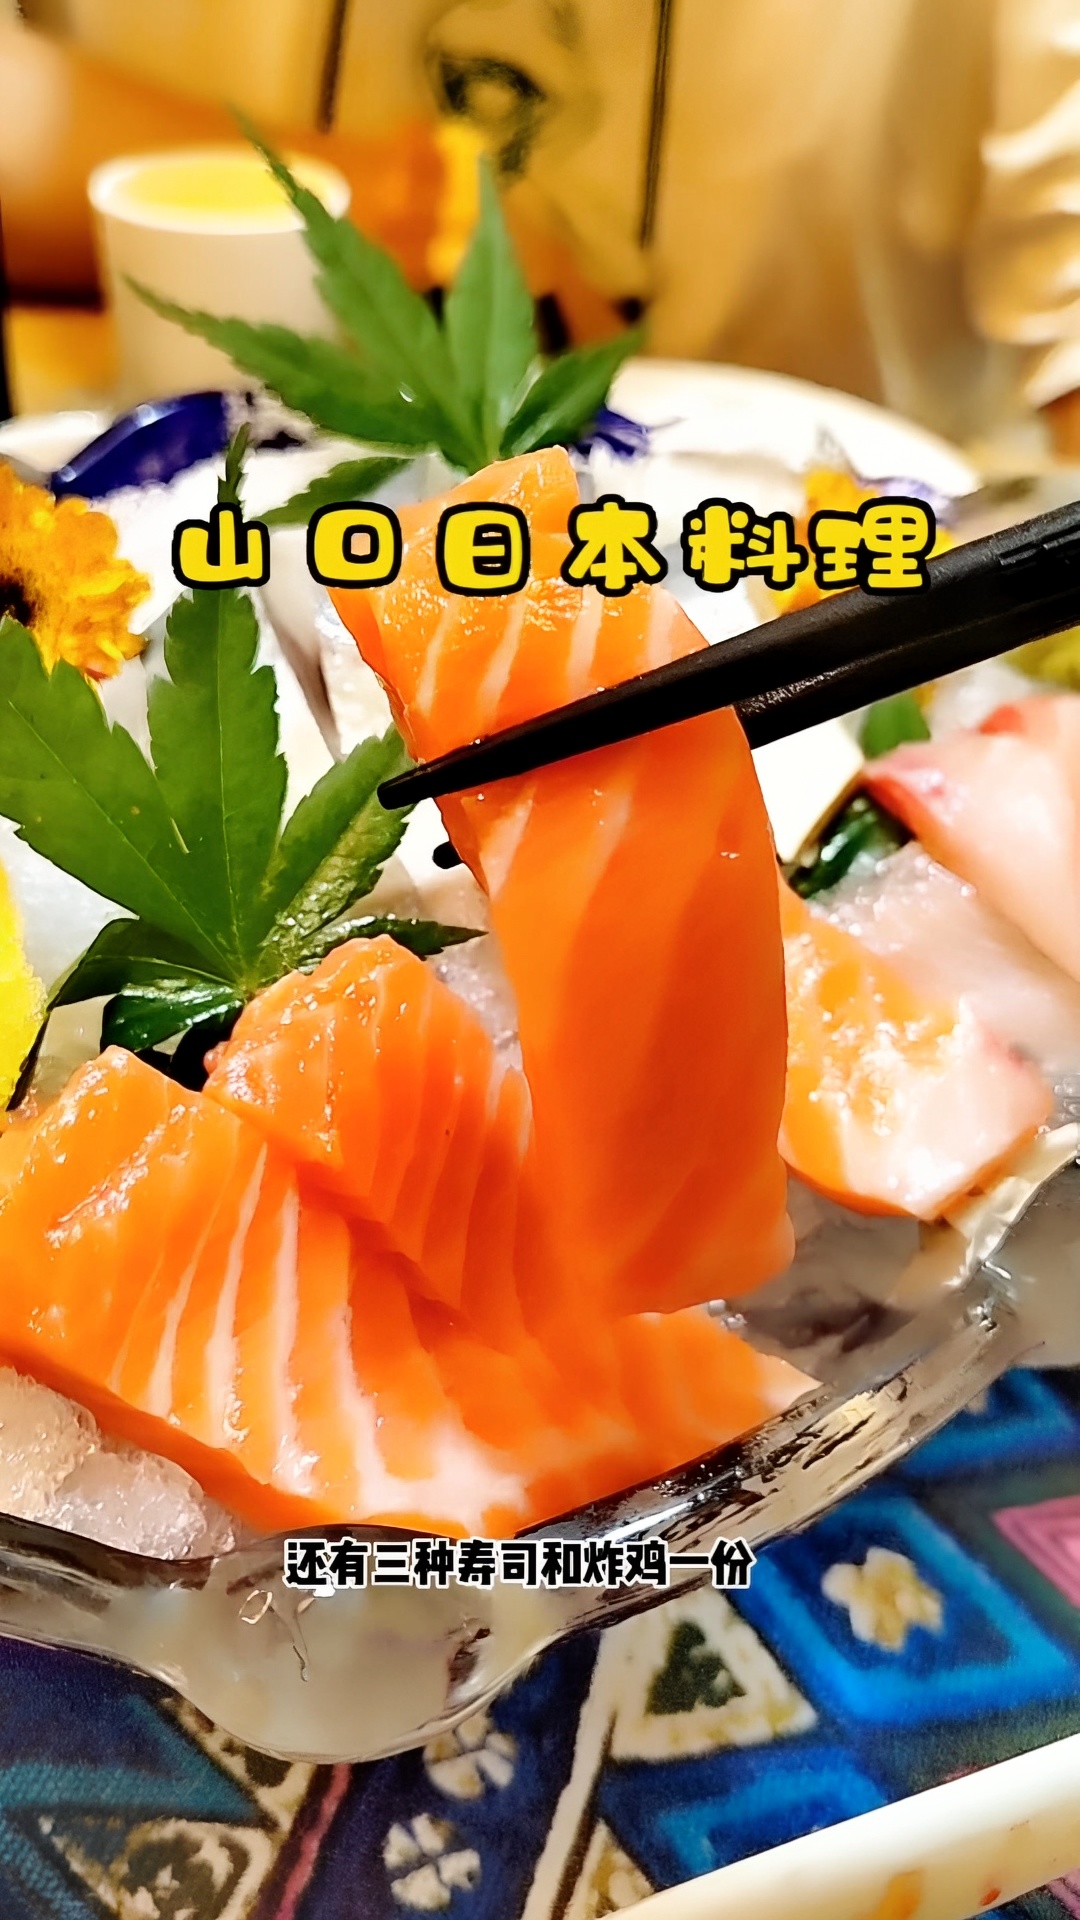 藏在繁华市区的小店，山口日本料理你吃过吗？